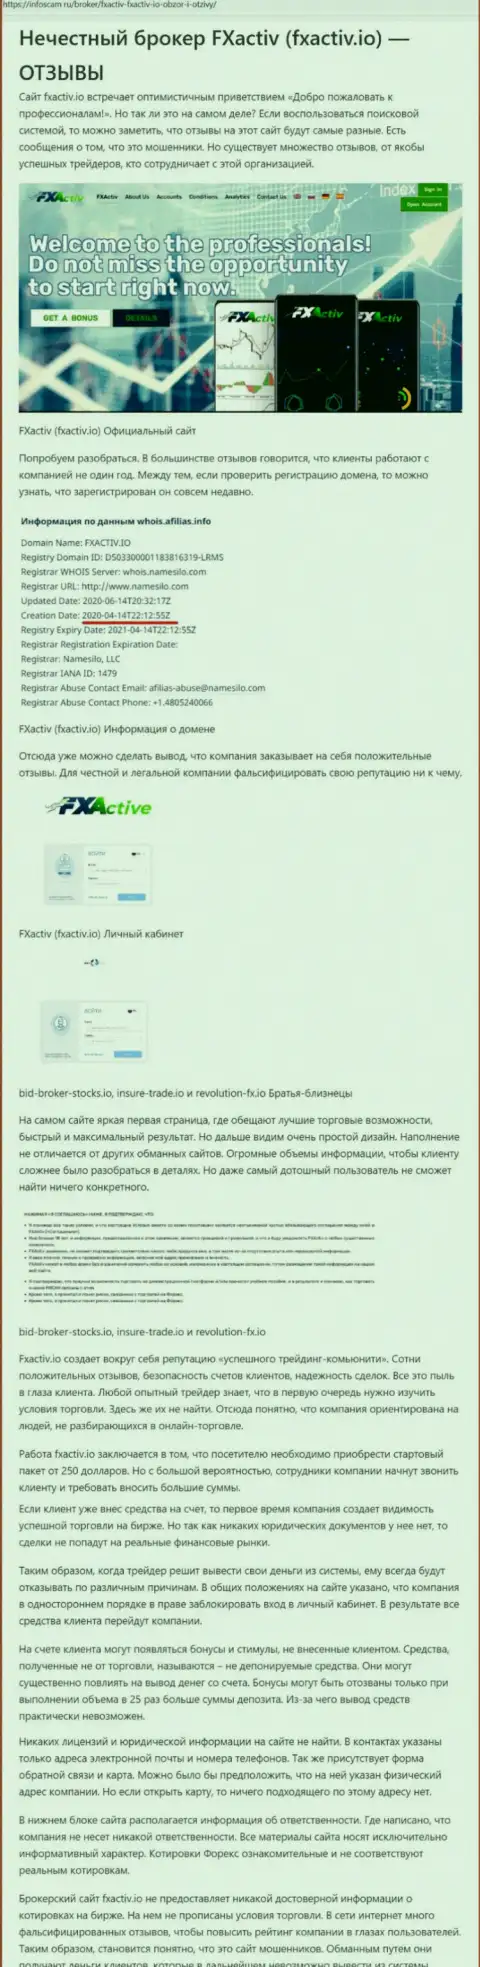 FXActiv - это жульническая организация, наглым образом обворовывает жертв (обзор мошеннических действий интернет обманщиков)